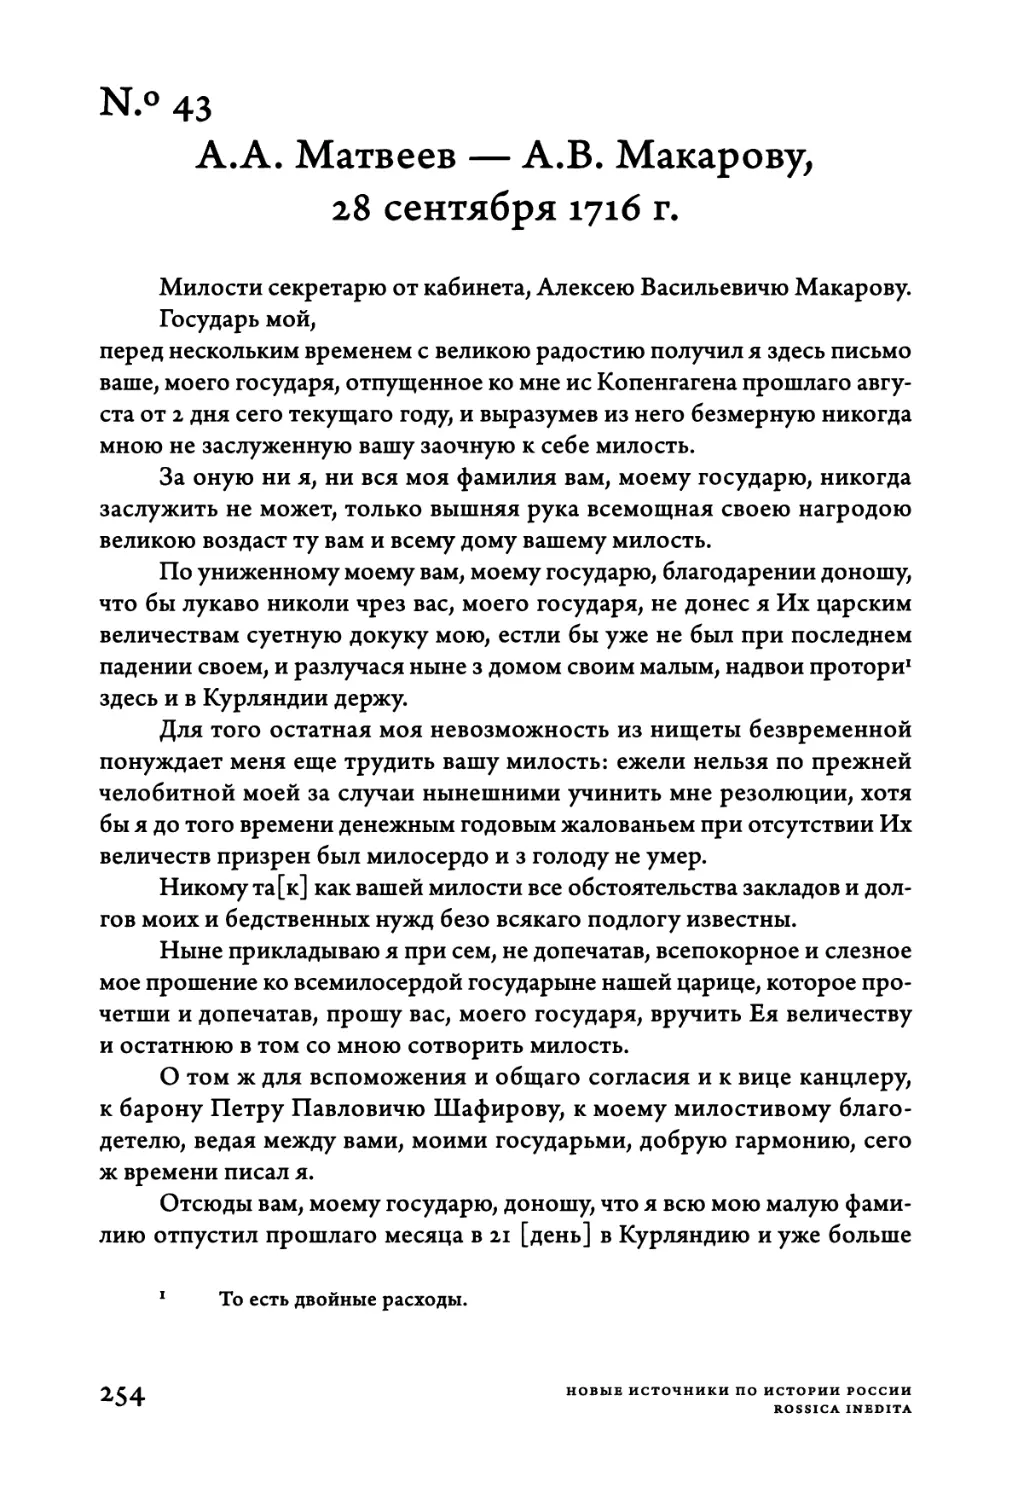 Ν.°43. A.A. Матвеев — A.B. Макарову, 28 сентября 1716 г.